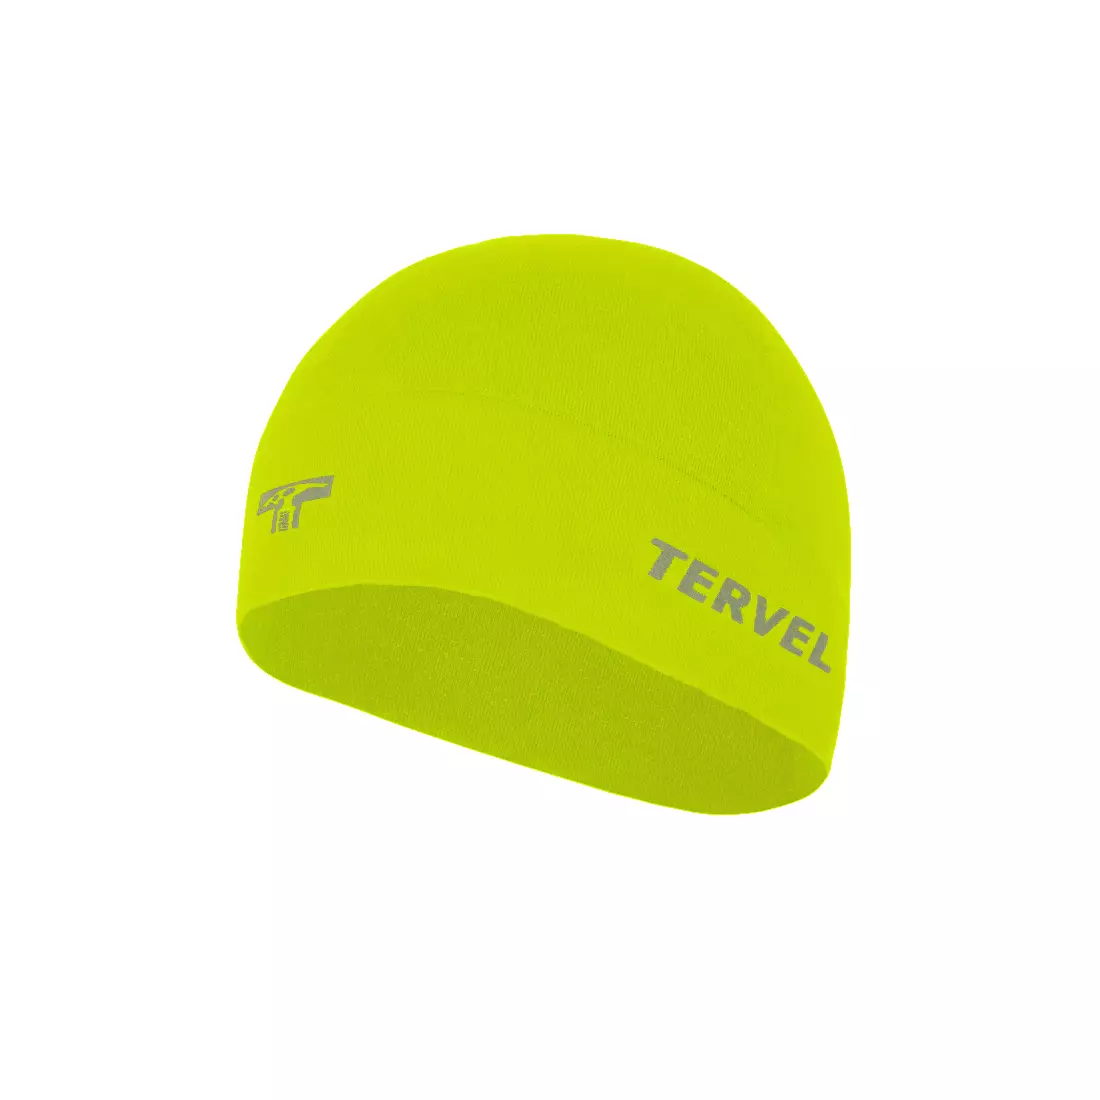 TERVEL 7001 - COMFORTLINE - șapcă de antrenament, culoare: Fluor, mărime: Universal